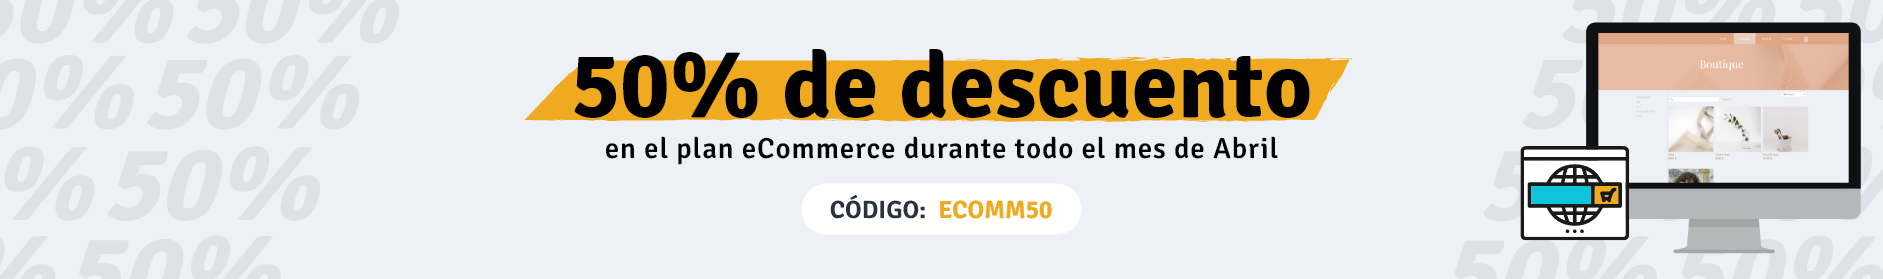 webself-ecommerce-title